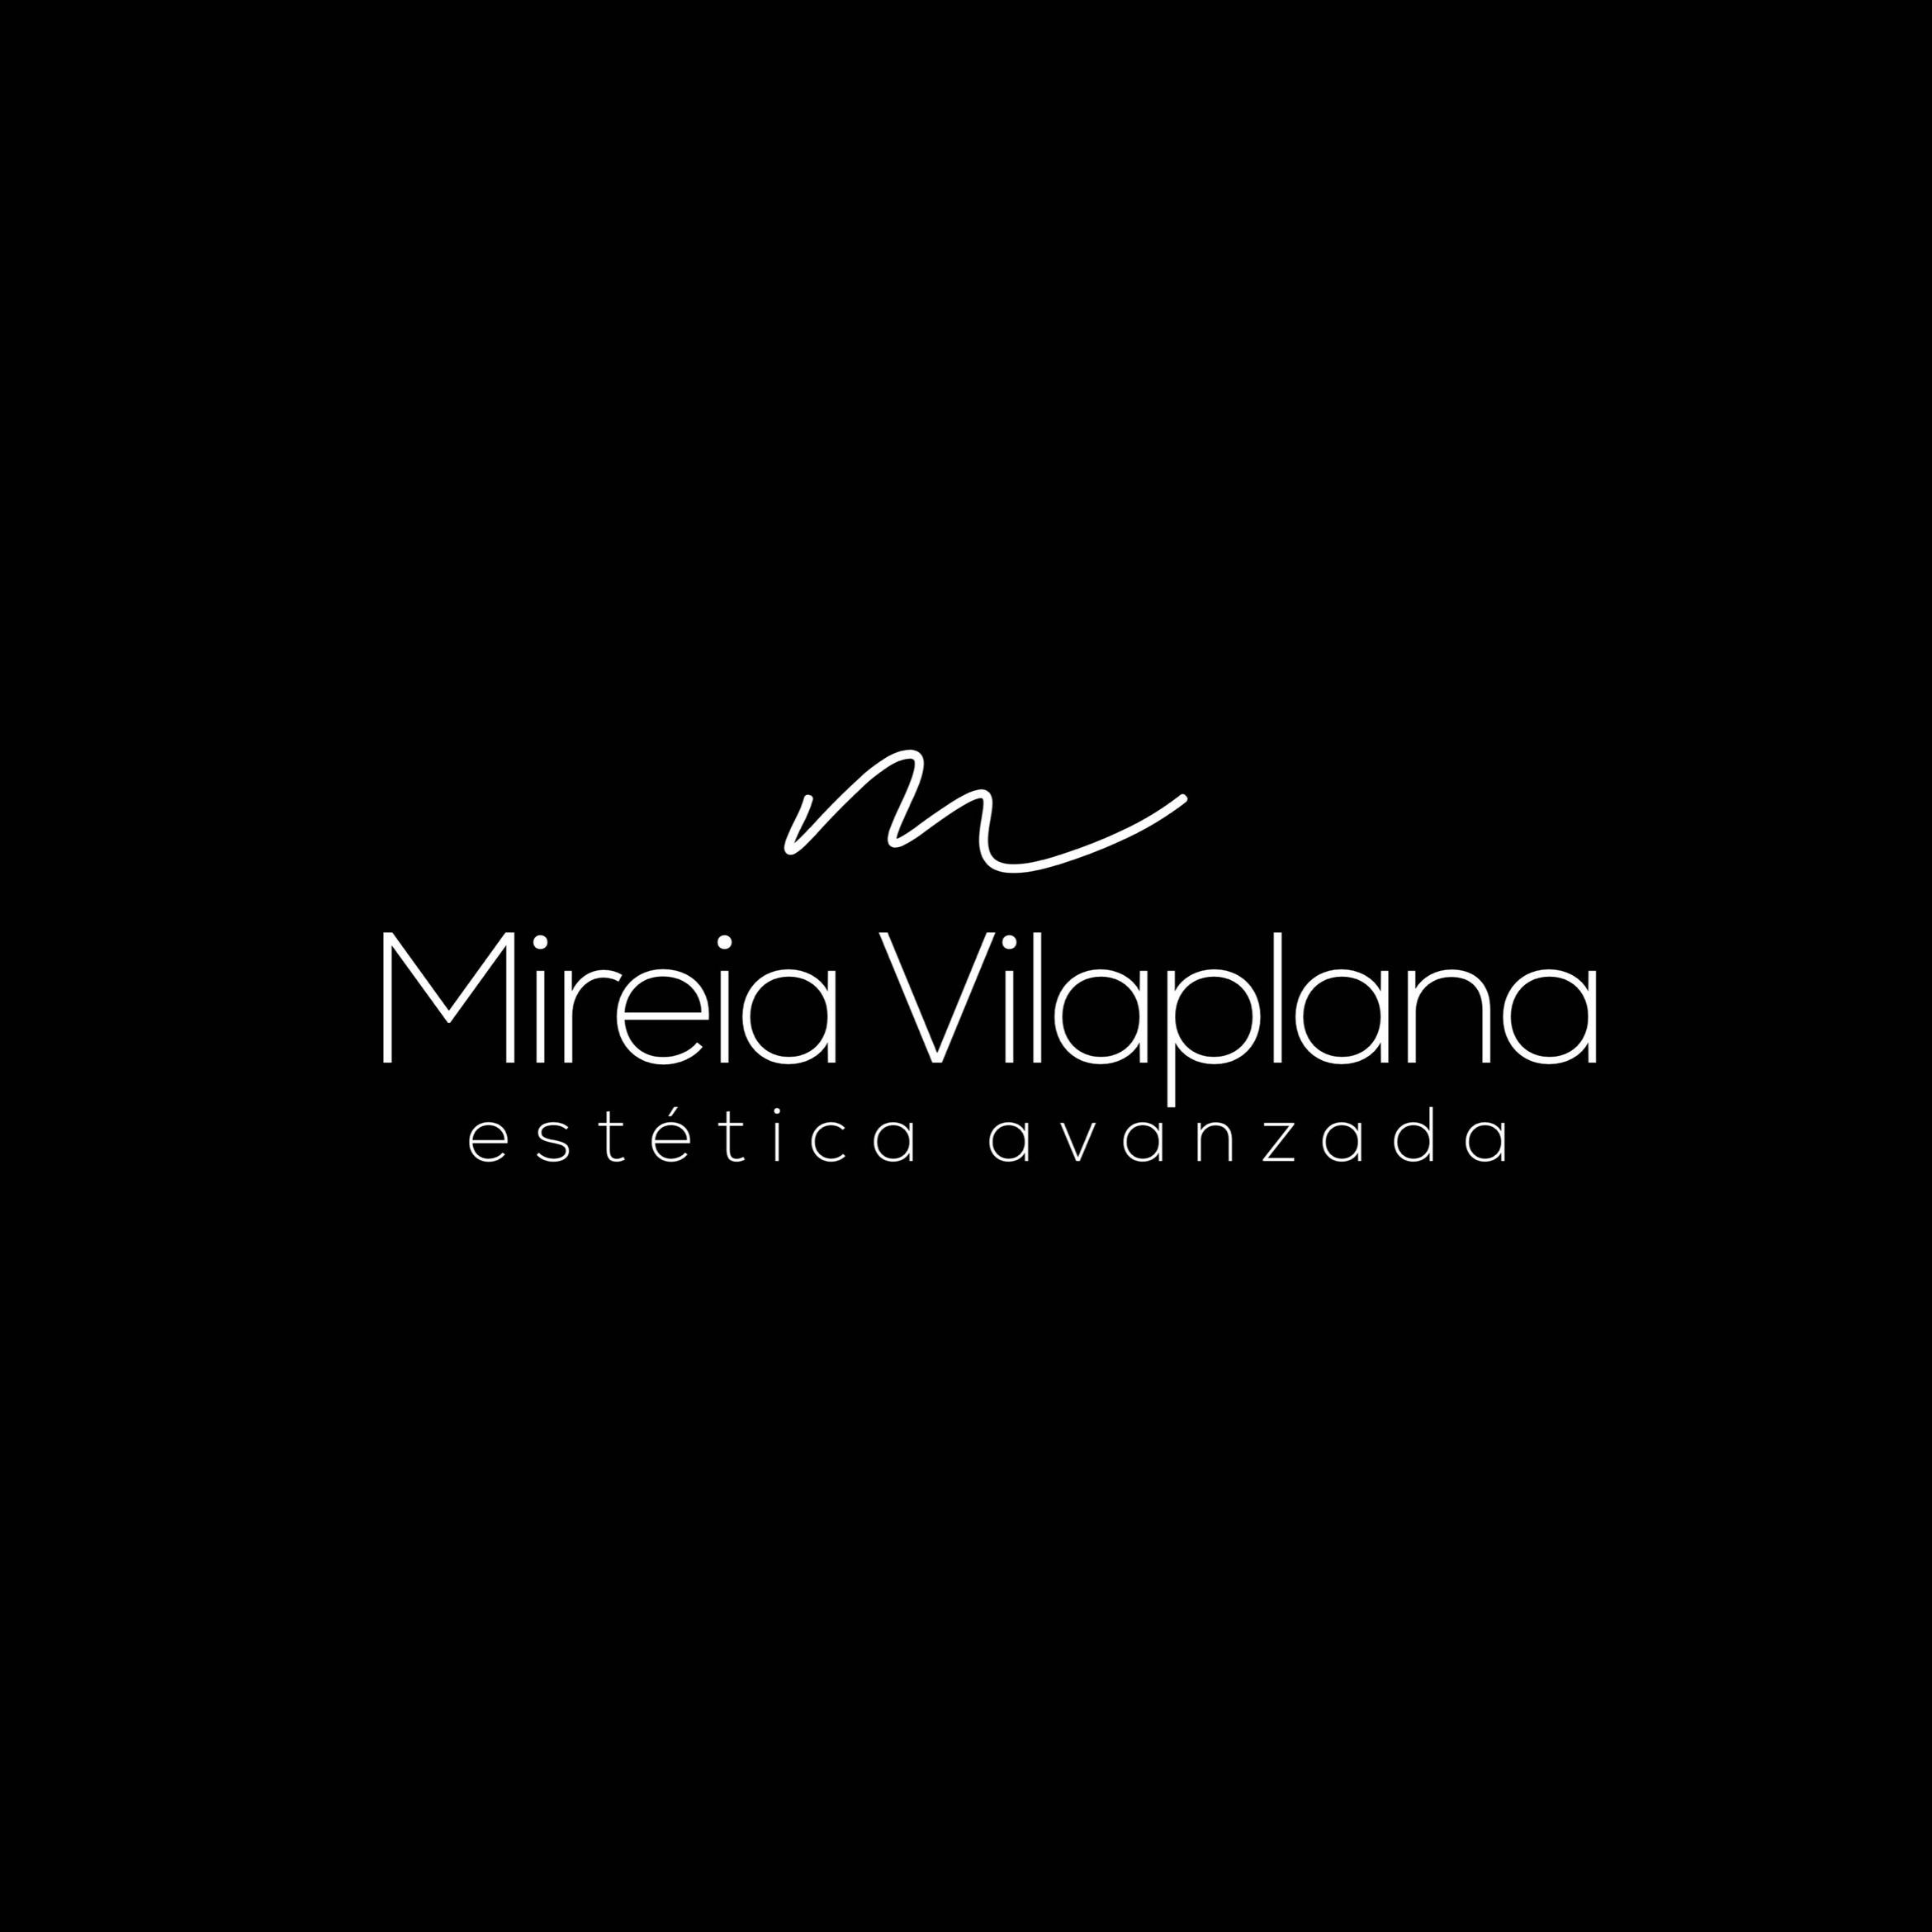 Mireia Vilaplana - Estética Avanzada, Calle de la Milagrosa, 6, 03802, Alcoy